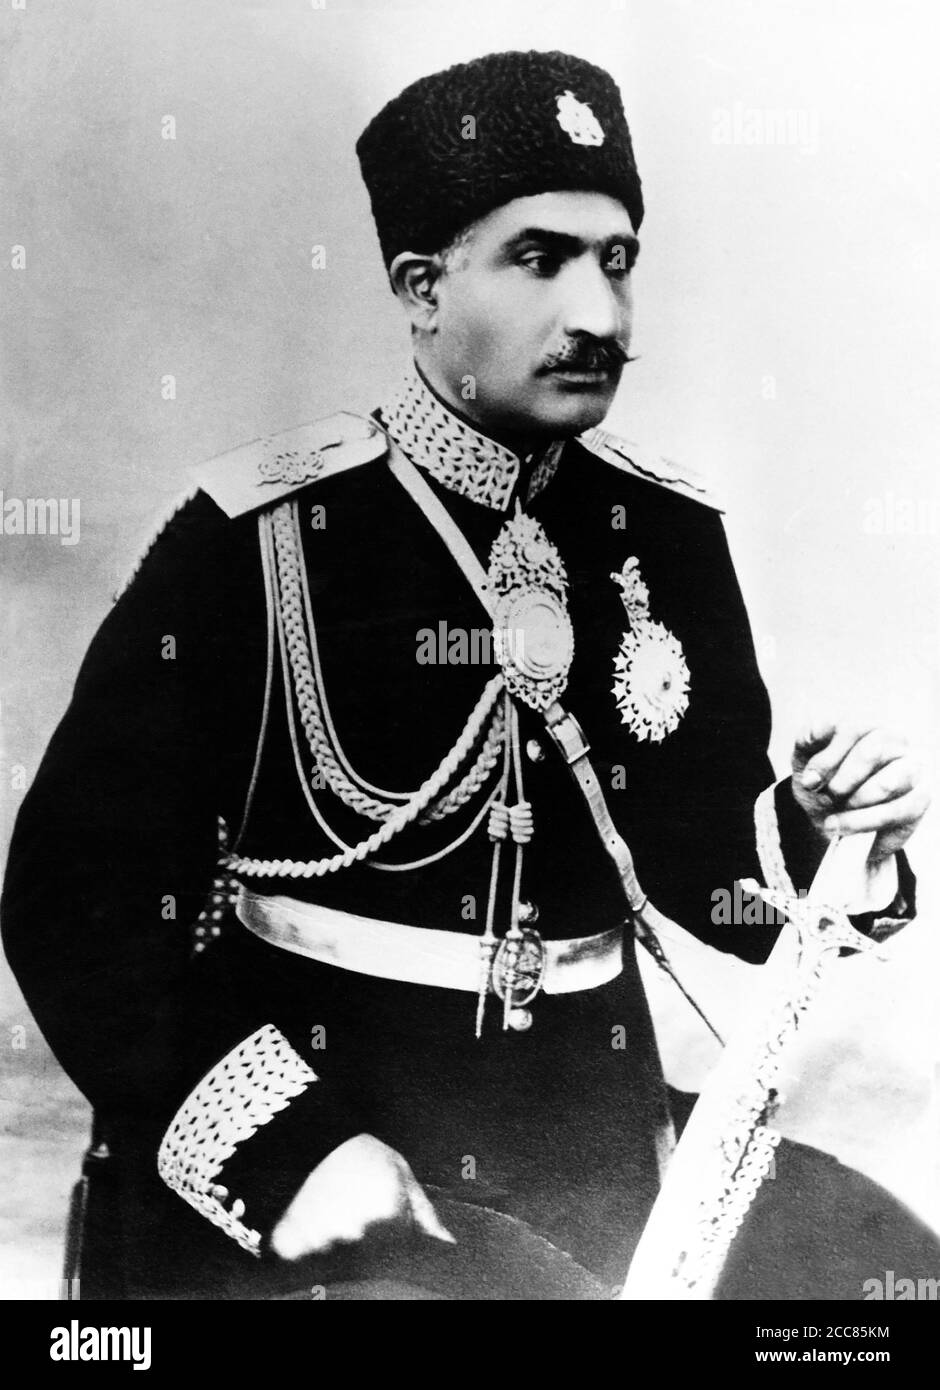 Iran: Reza Shah Pahlavi (1878-1944), pendant son temps en tant que ministre de la guerre, c. 1921-1923. Il est né dans le village d'Alasht en 1878 et rejoint la Brigade des cosaques persans quand il a eu 16 ans, devenant ainsi un général de brigade, le seul commandant iranien de son histoire. Sous la direction britannique, Reza a aidé à orchestrer un coup d'État en 1921 qui a renversé le gouvernement précédent, en se nommant ministre de la Guerre et Sardar Sepah (commandant en chef de l'armée). Il est devenu Premier ministre en 1923, puis nommé Shah et monarque juridique de l'Iran en 1925, créant la dynastie Pahlavi. Banque D'Images